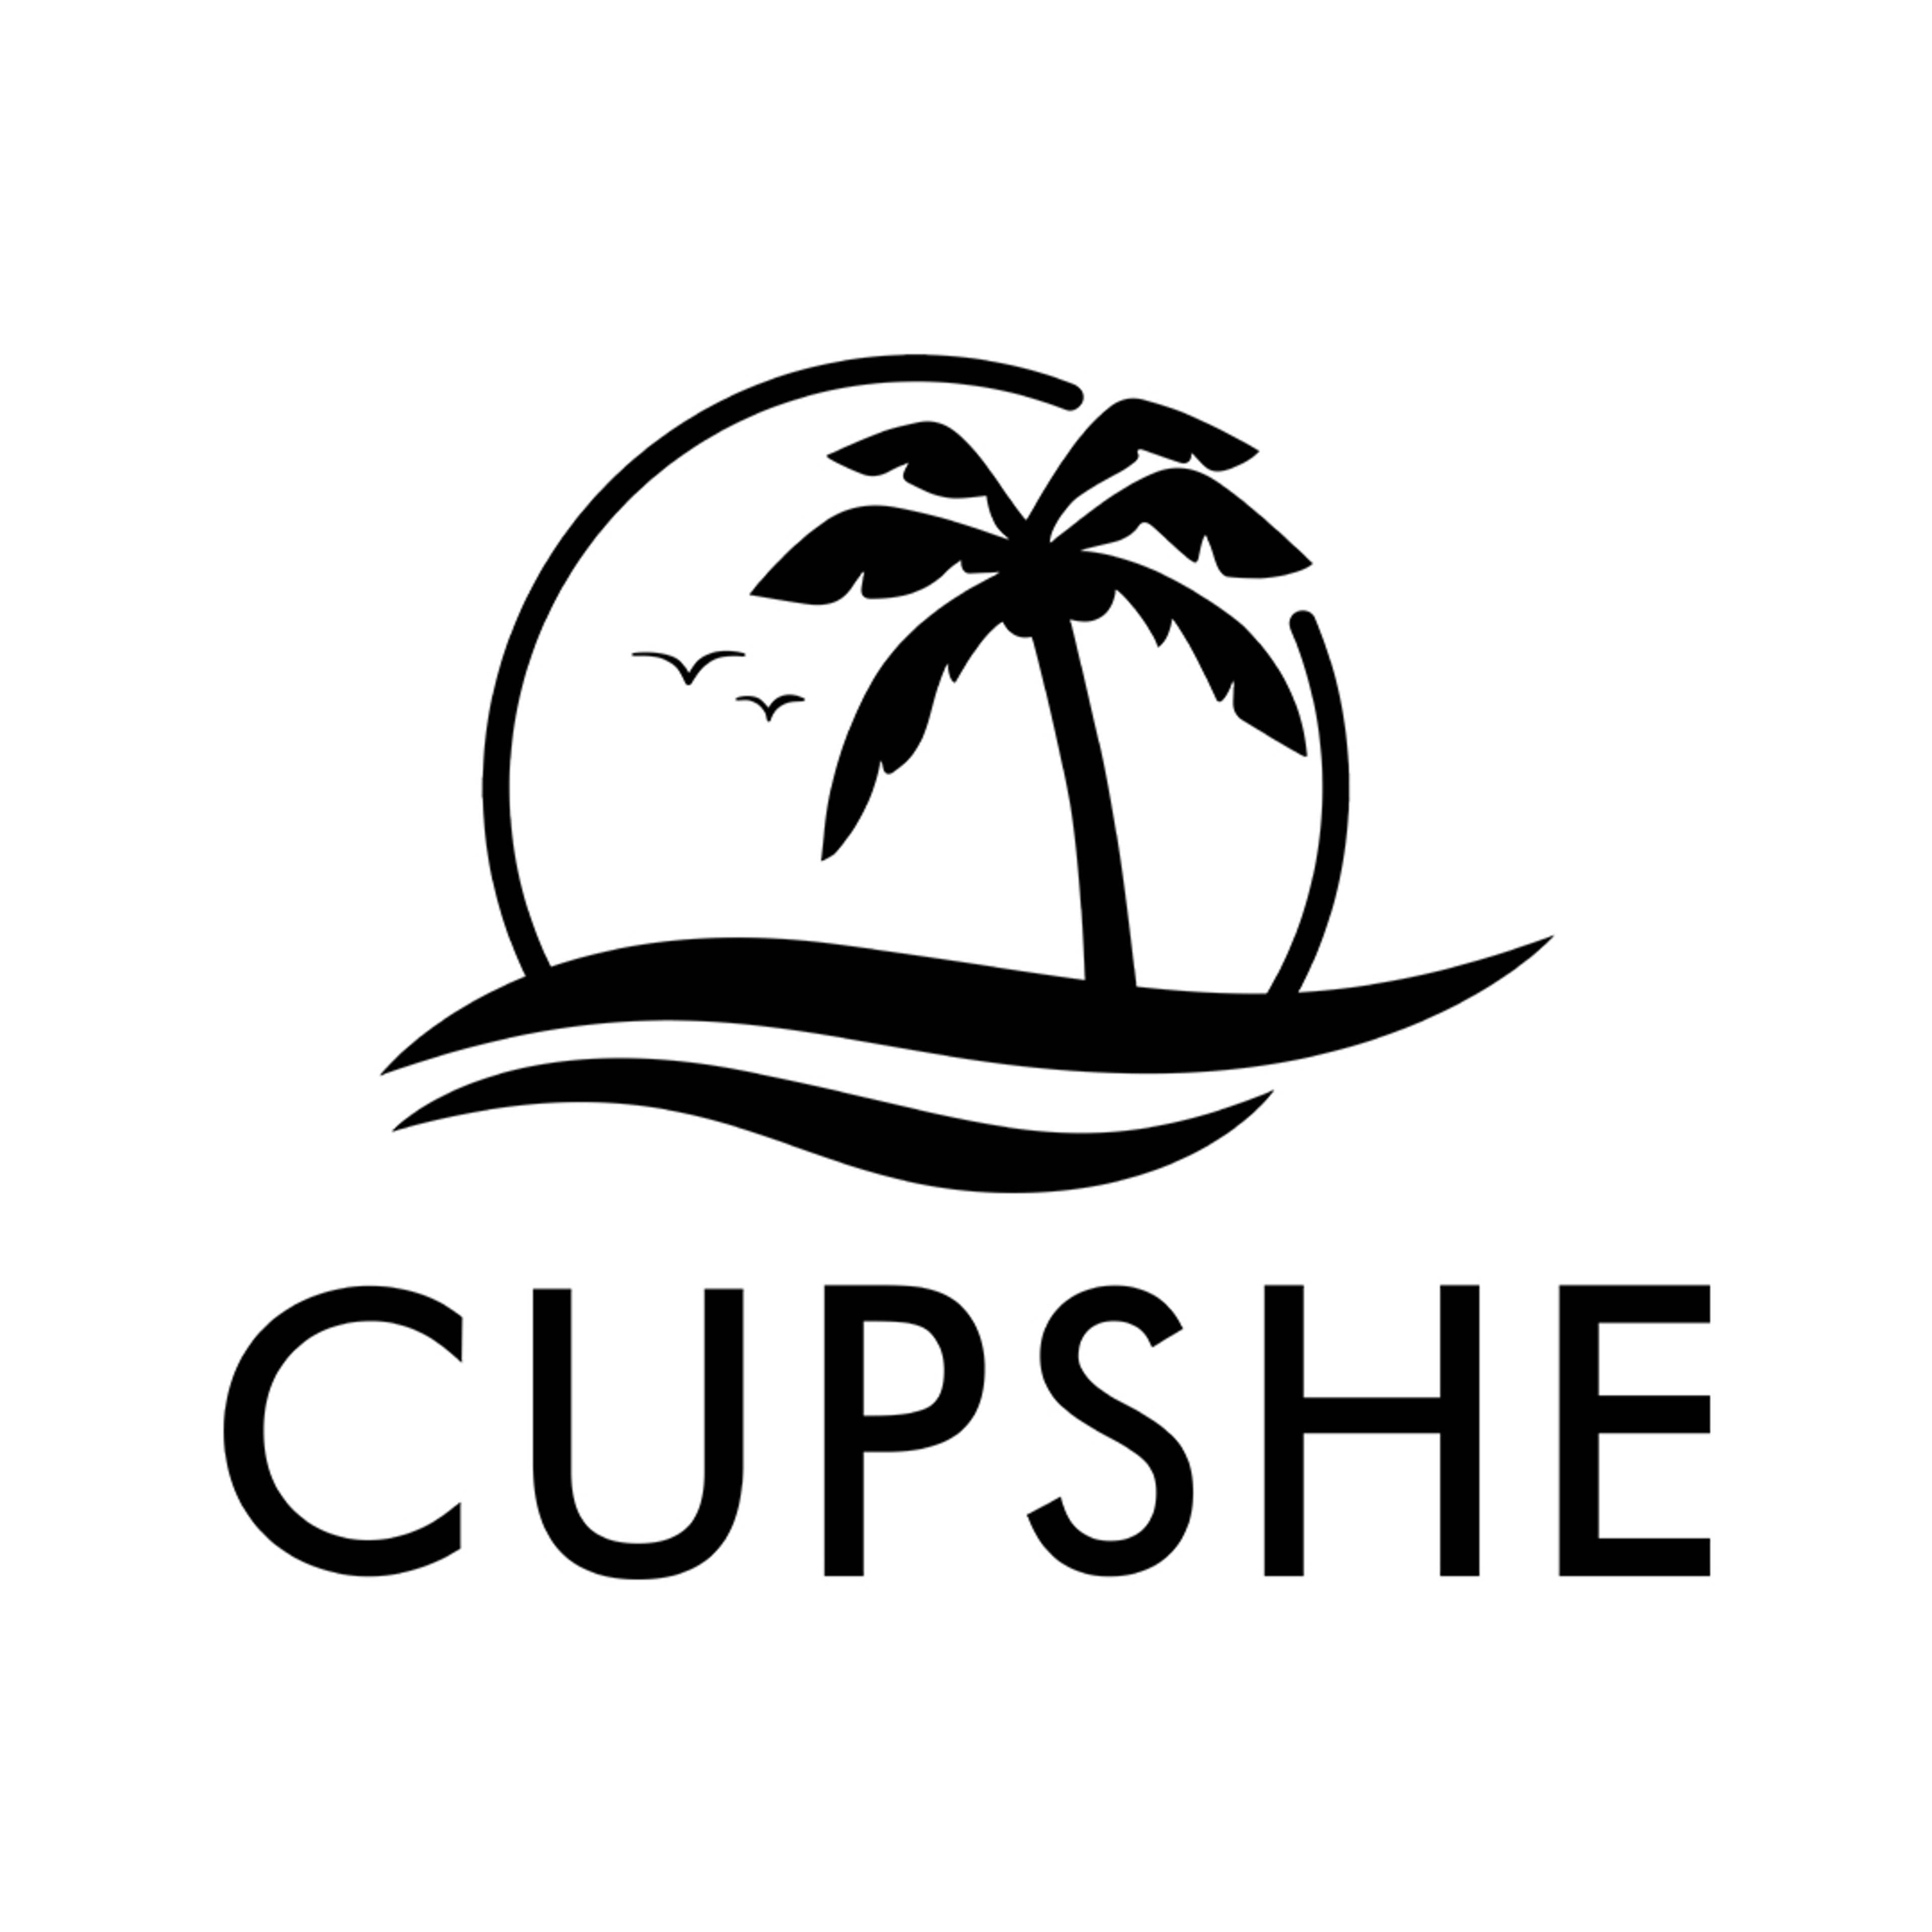 CupsheCode